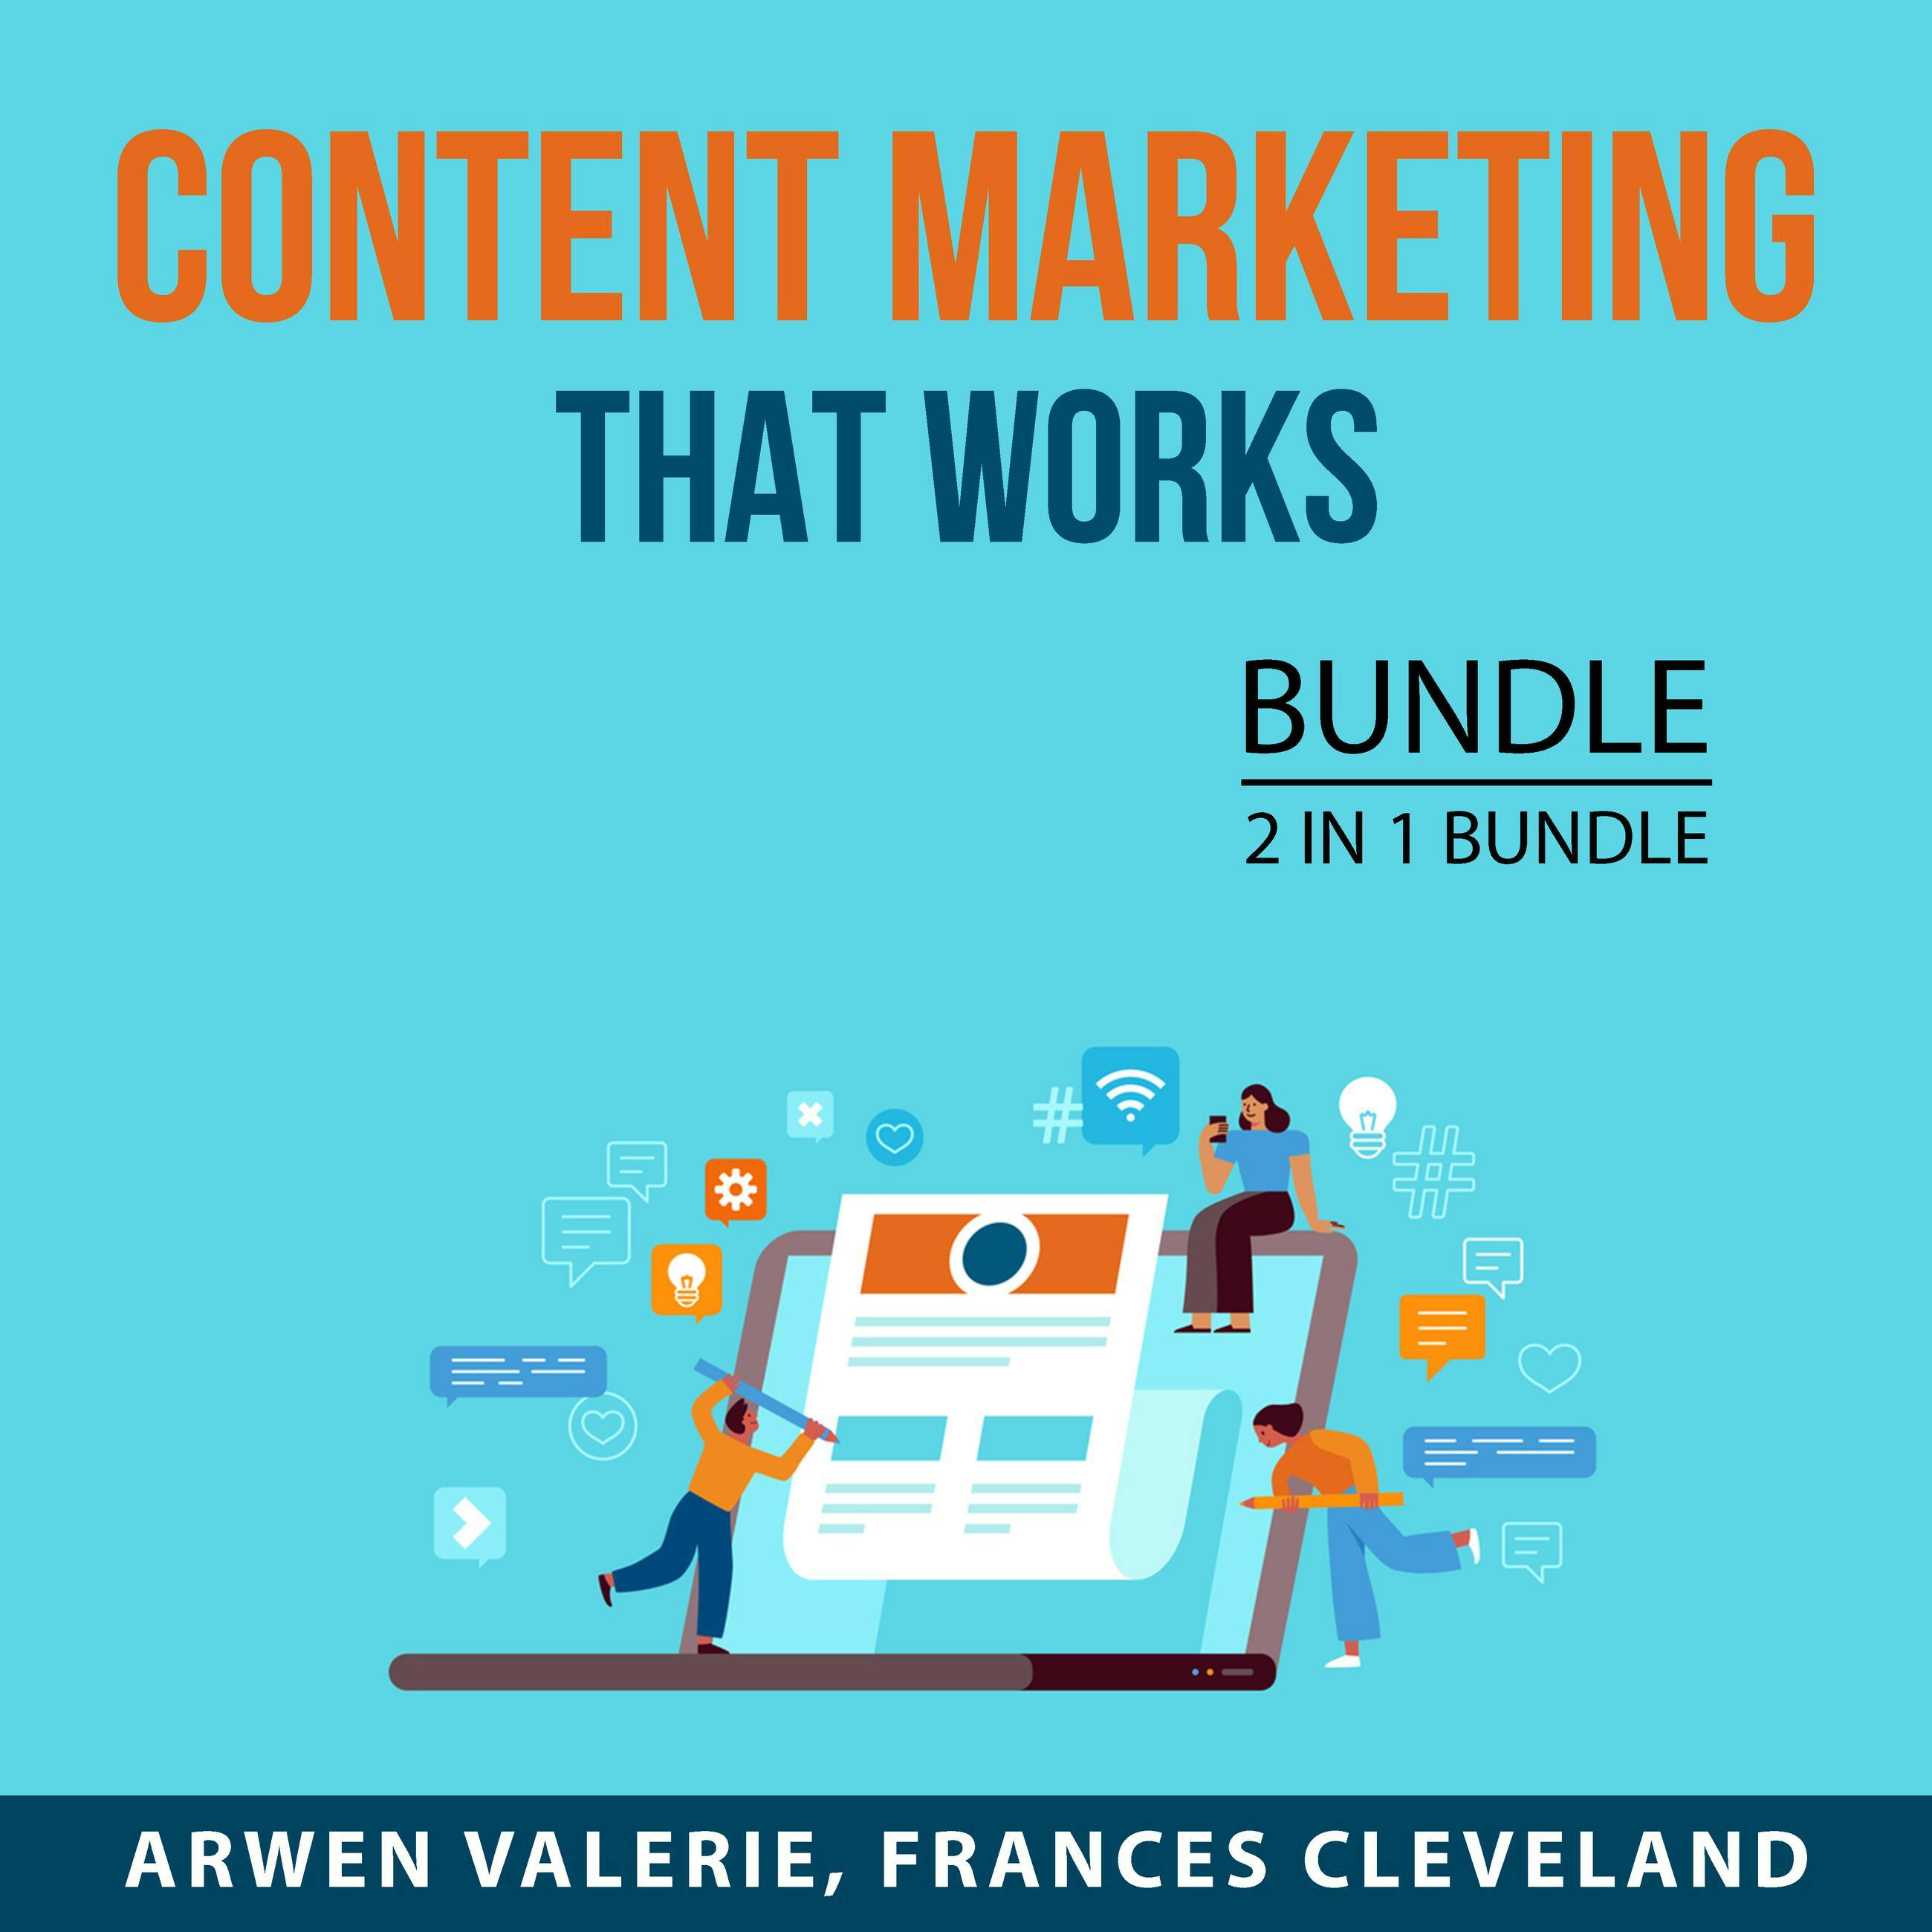 Content Marketing That Works Bundle, 2 in 1 Bundle: Content Marketing Guide and Content Marketing Made Easy - Frances Cleveland, Arwen Valerie